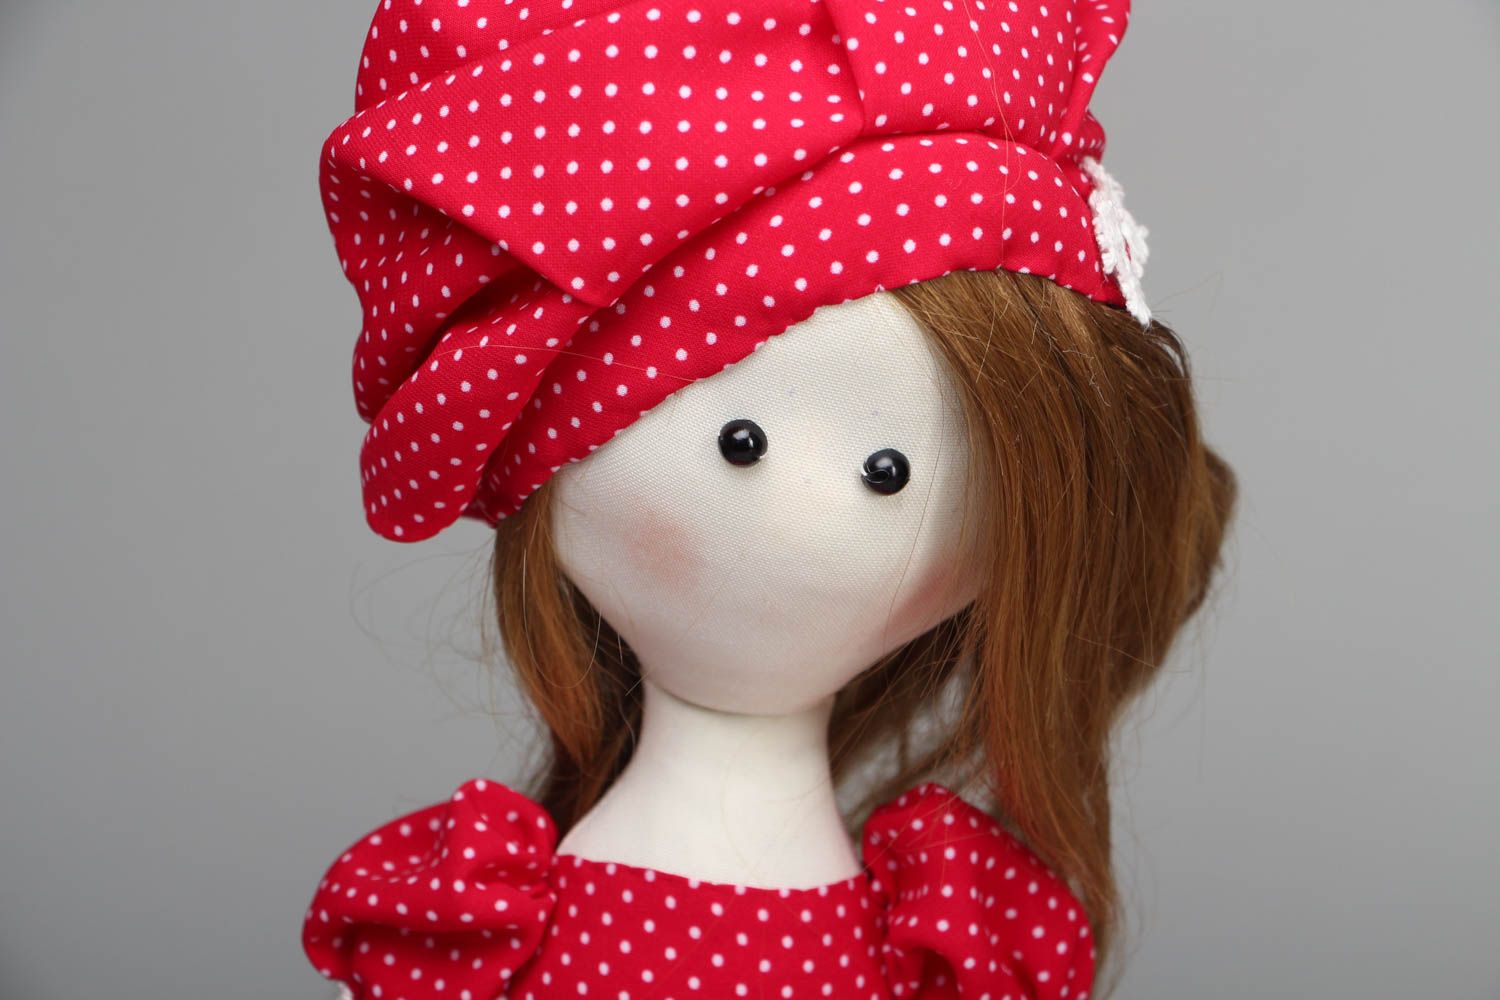 Handmade designer doll in polka-dot dress photo 2